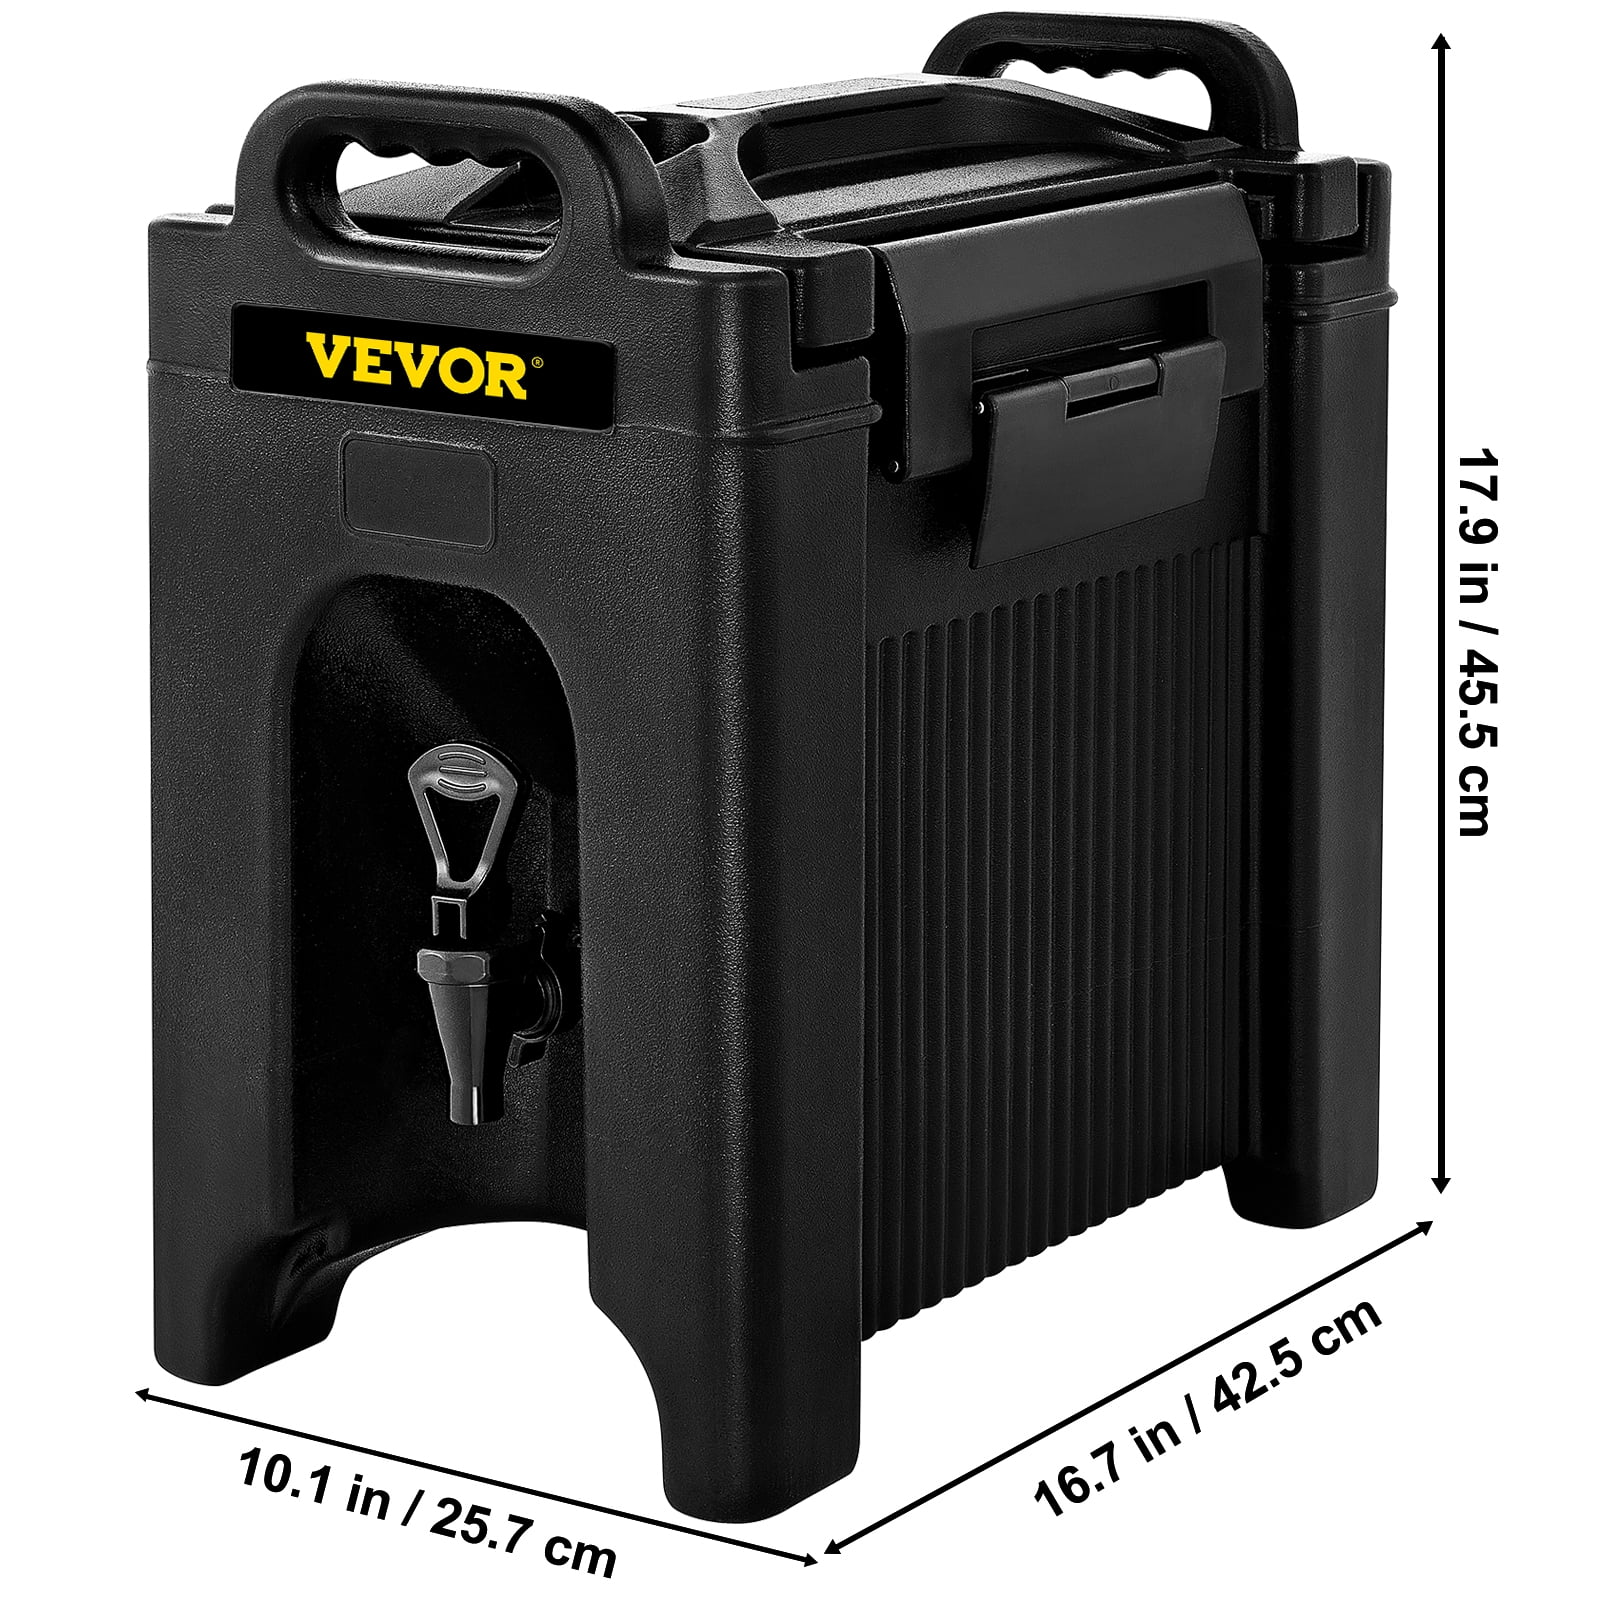 VEVOR Insulated Beverage Dispenser 2.5 Gal Beverage Server Hot and